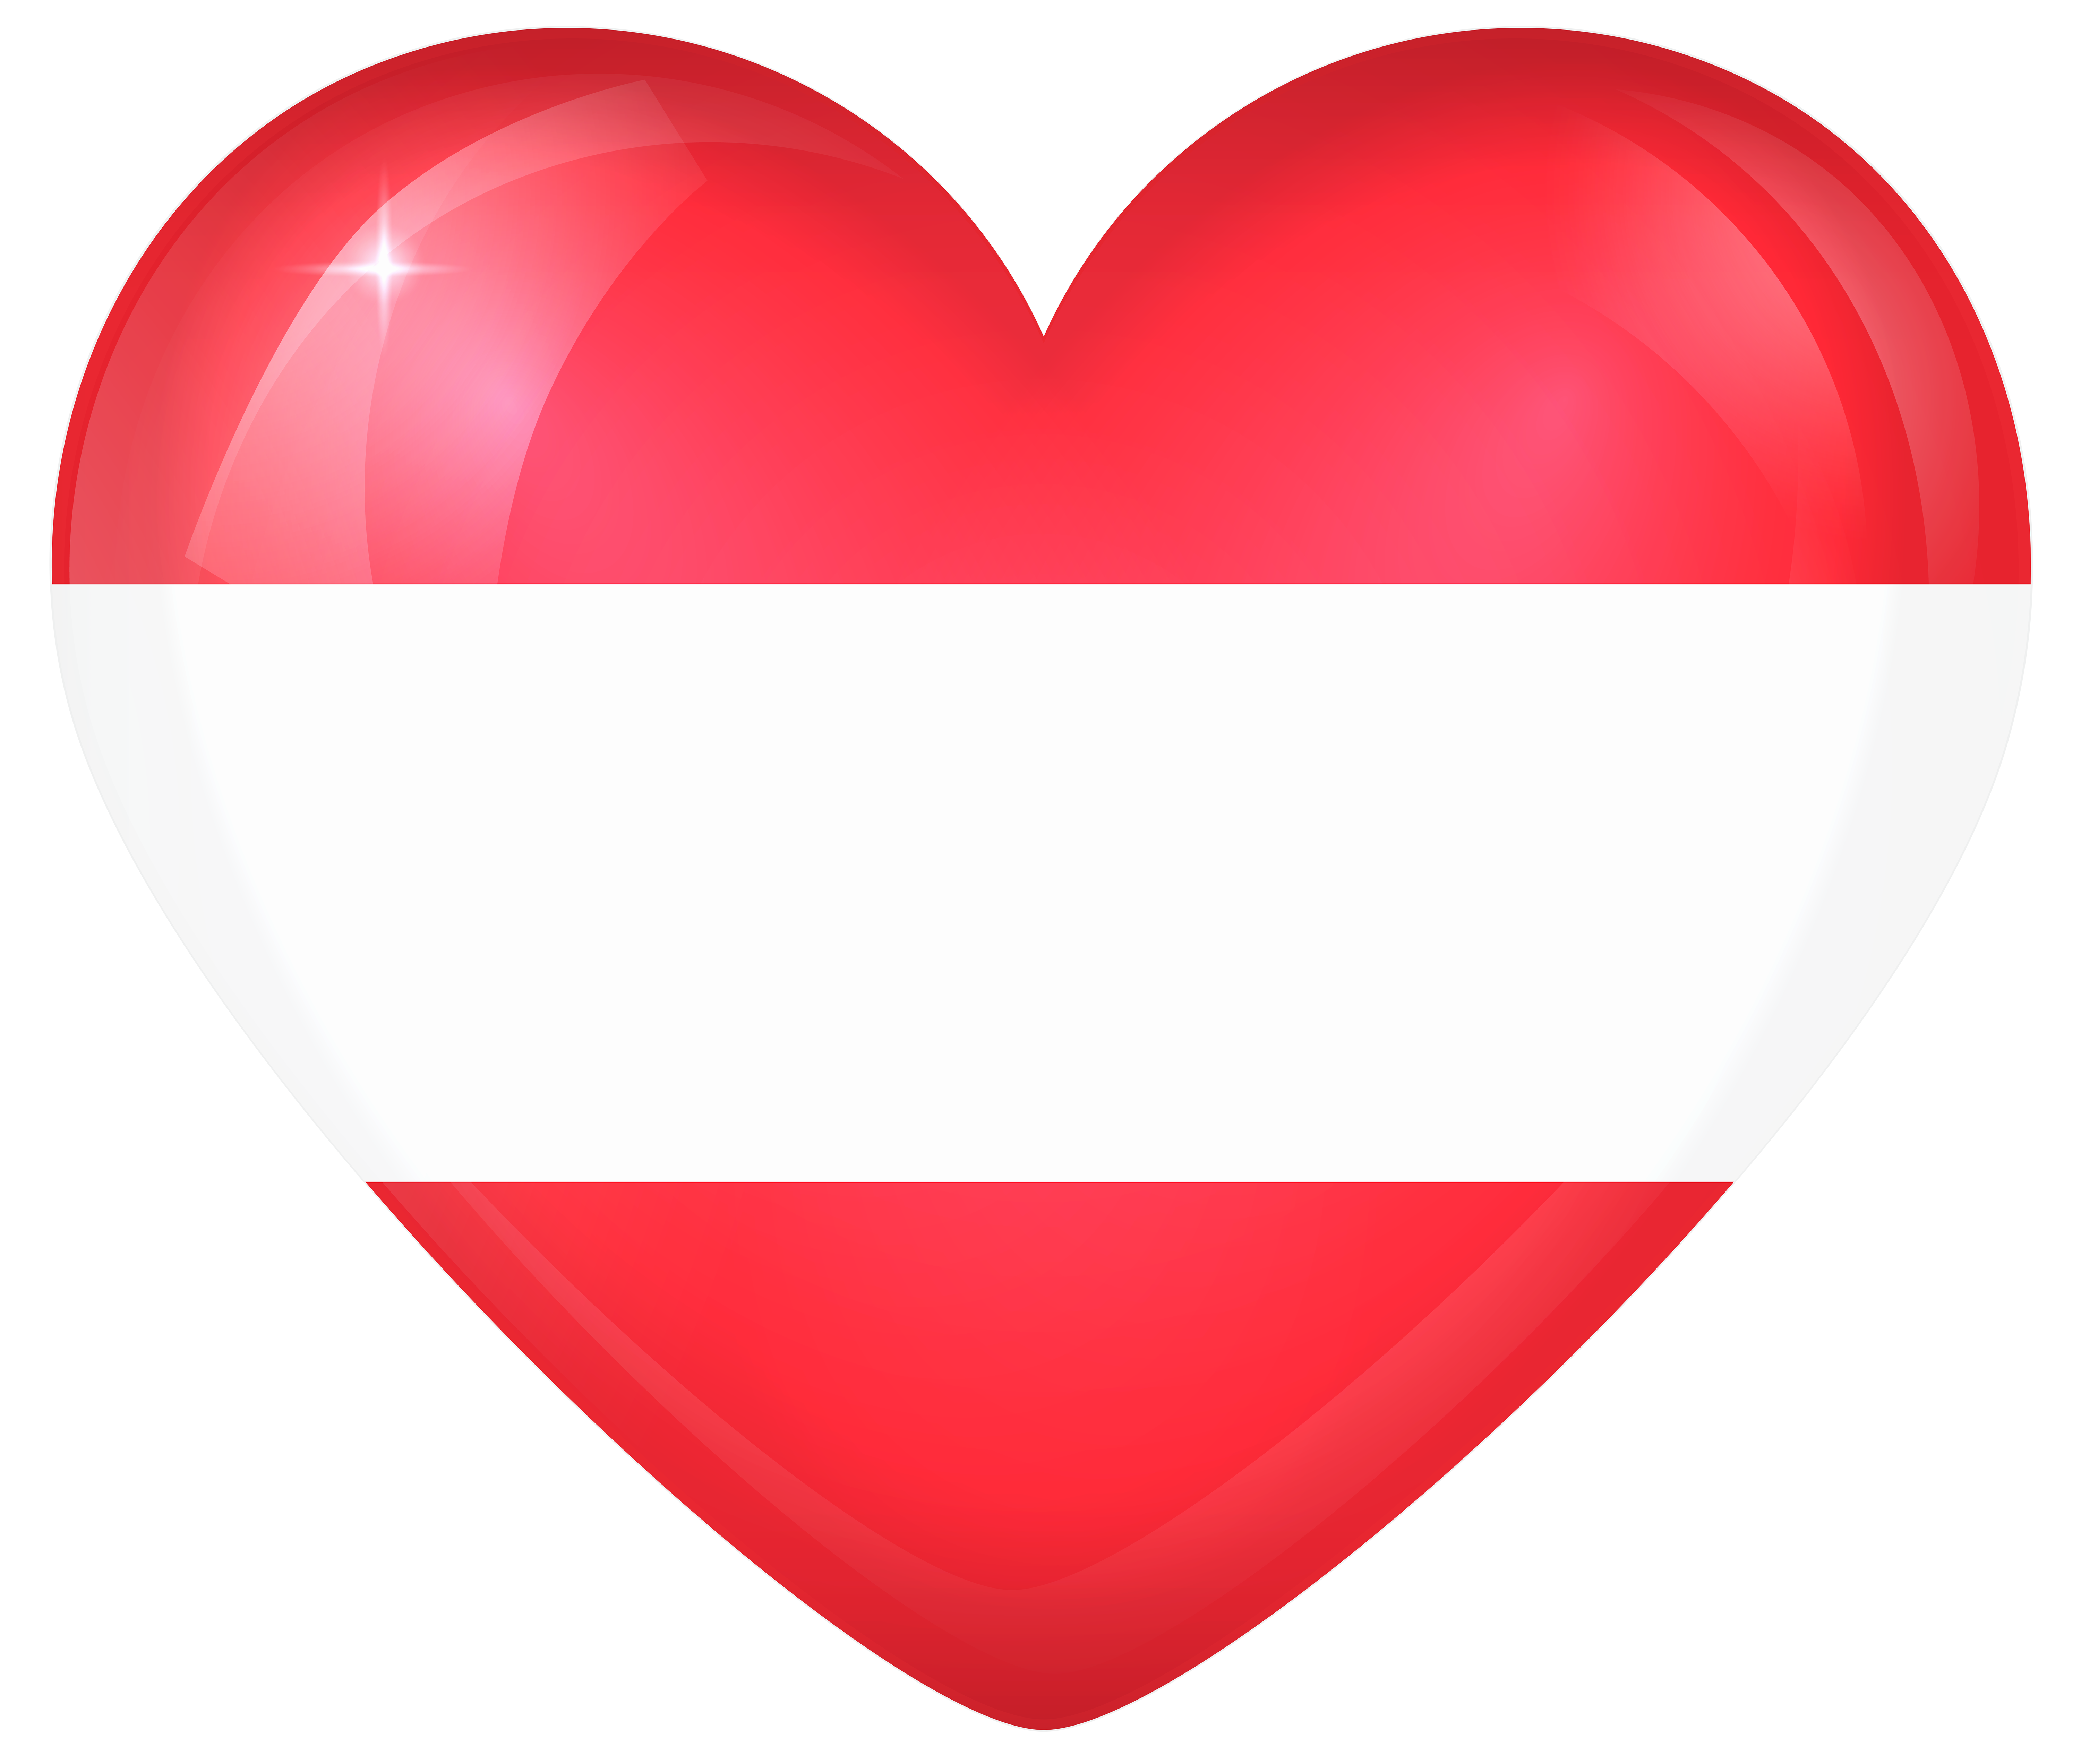 Austria_Large_Heart_Flag.png?m=1449182608.